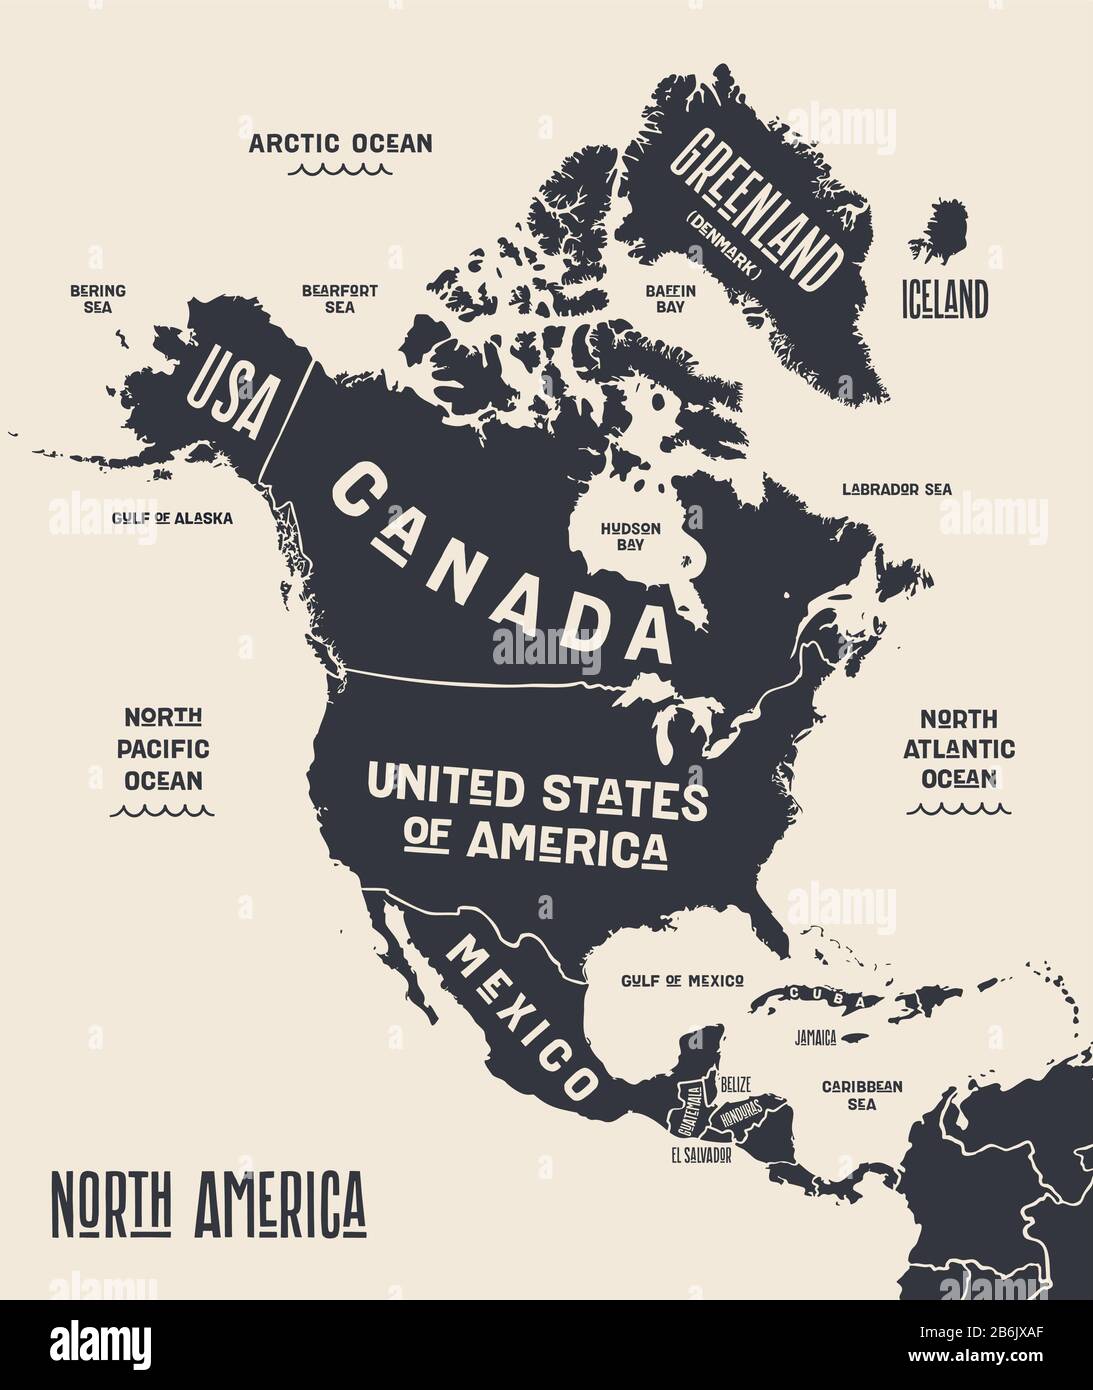 Mapa De América Del Norte Mapa Póster De Norteamérica Mapa Impreso En Blanco Y Negro De 3553